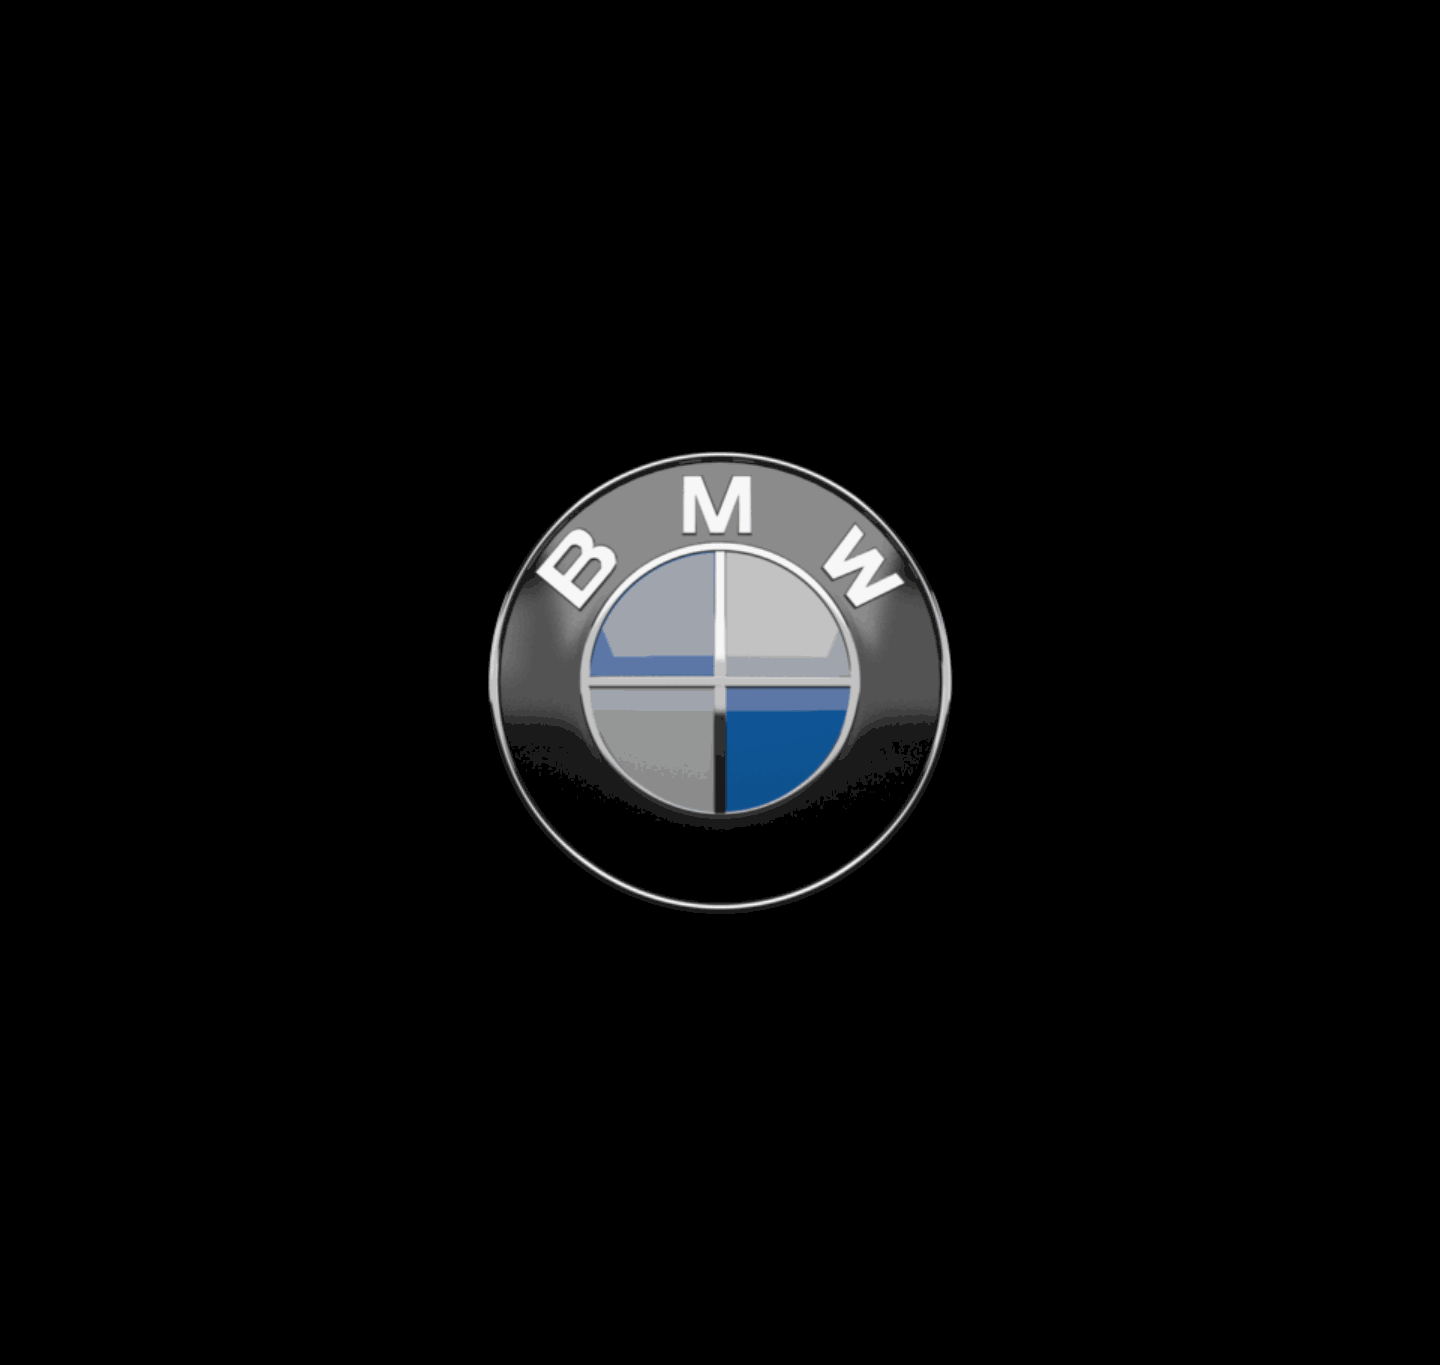 Андроид е60. Значок БМВ е60. BMW эмблема 4.4 е53. Лого БМВ e46 Compact. Обои БМВ.